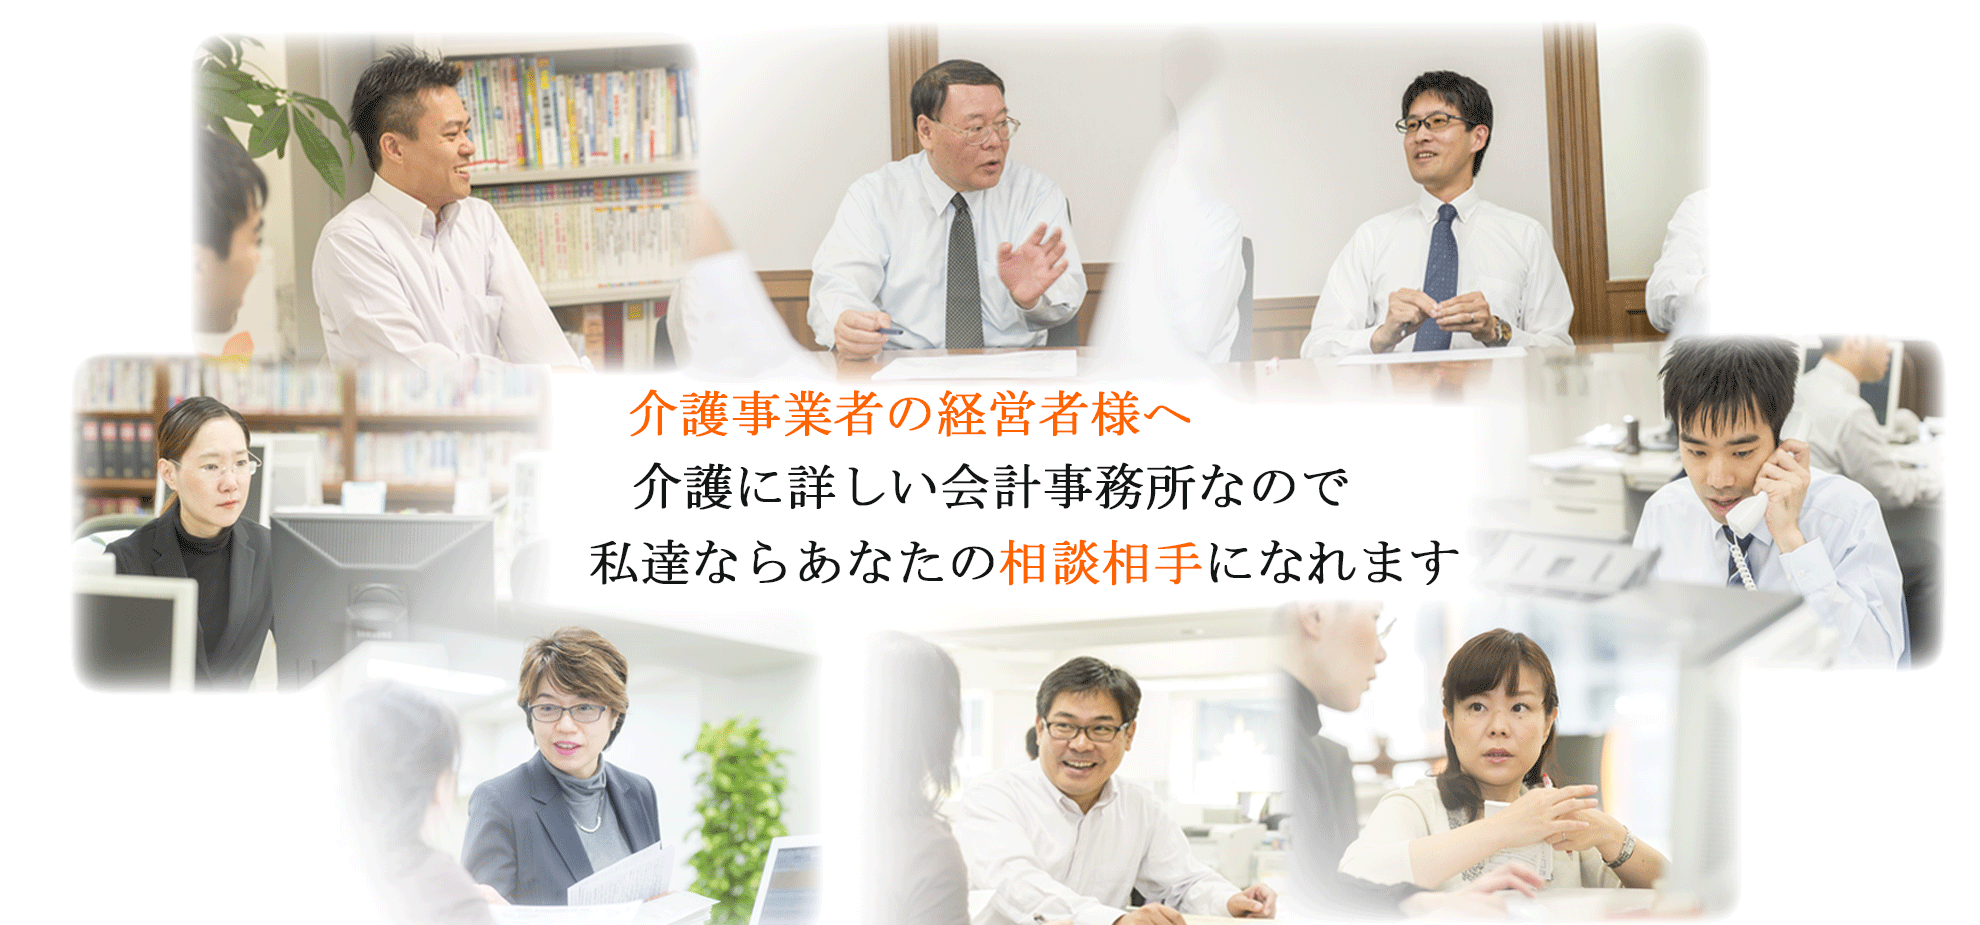 大阪、兵庫の介護事業者様に限定した地域密着型の税理士、会計事務所です。